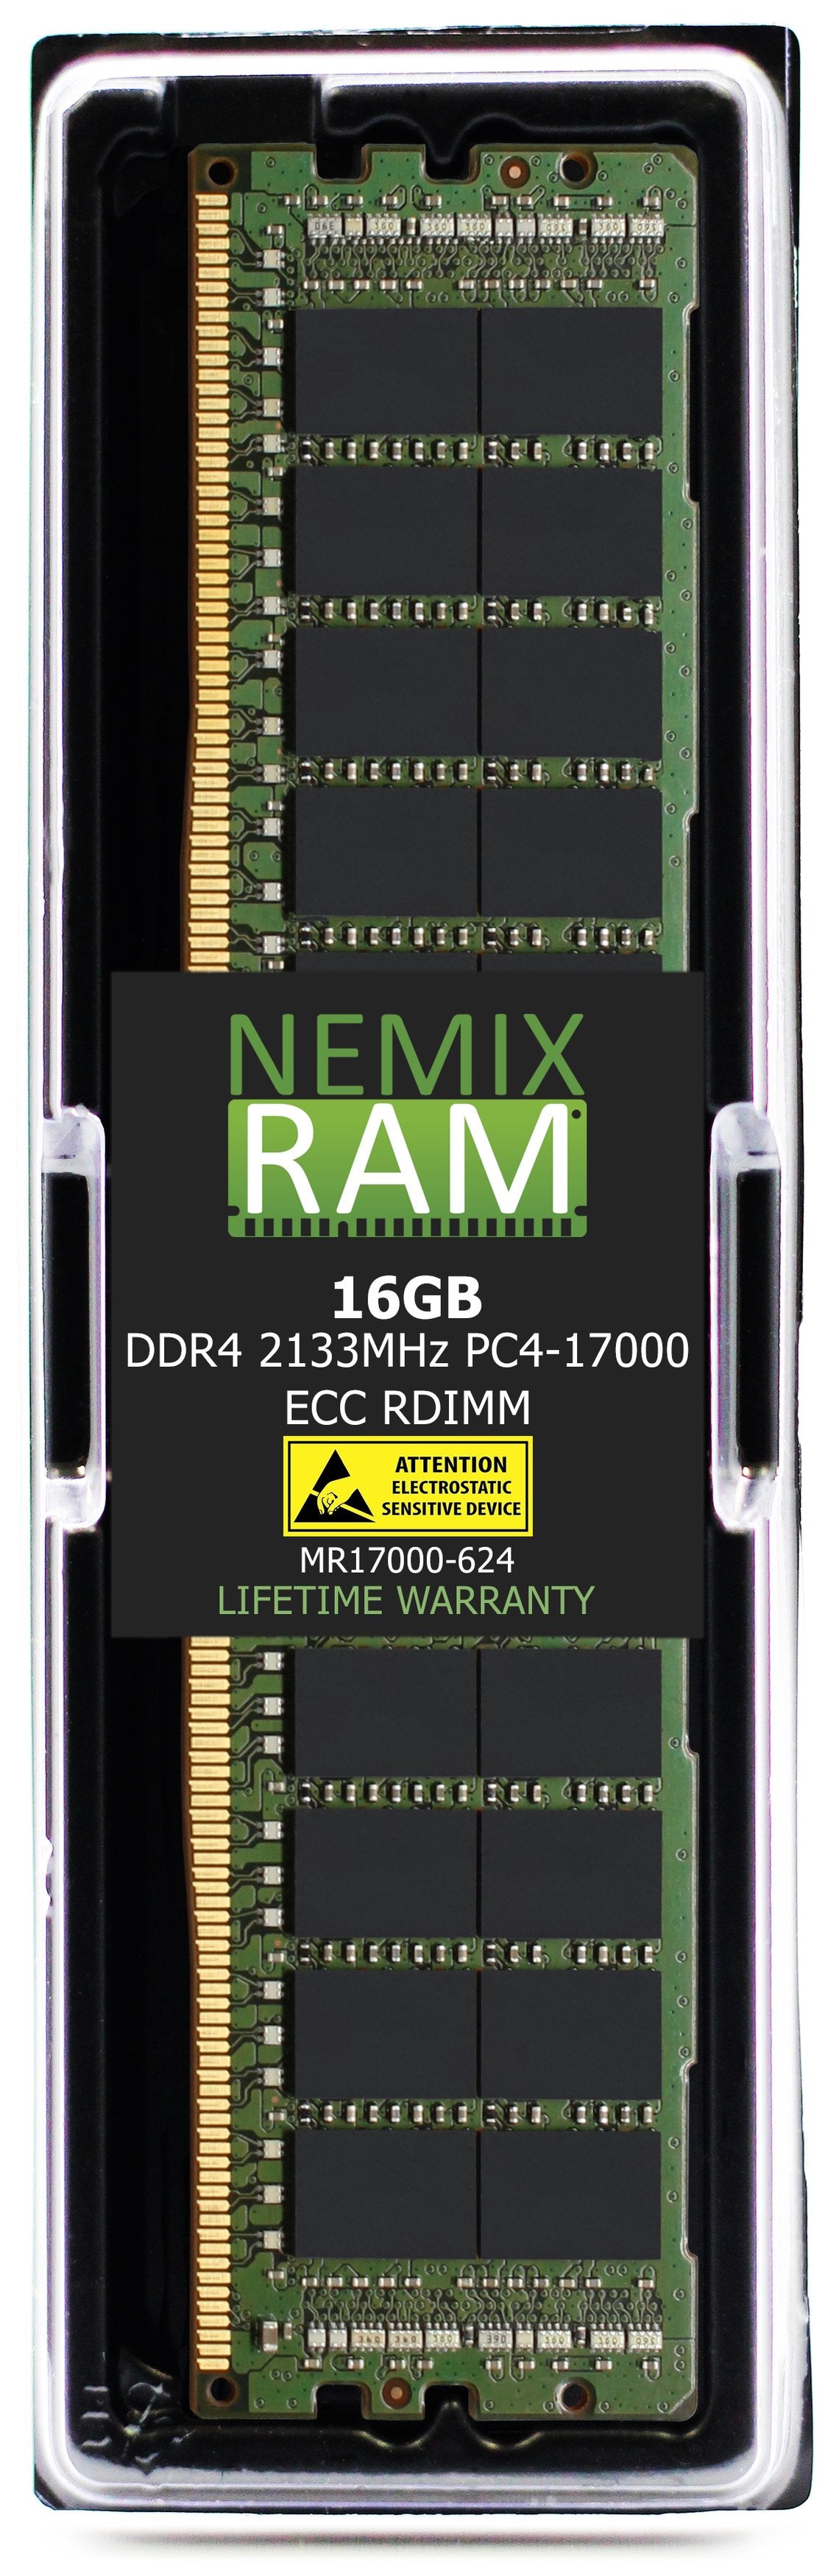 NEC Express5800 R120f Memory Module N8102-646F 16GB DDR4 2133MHZ PC4-17000 RDIMM